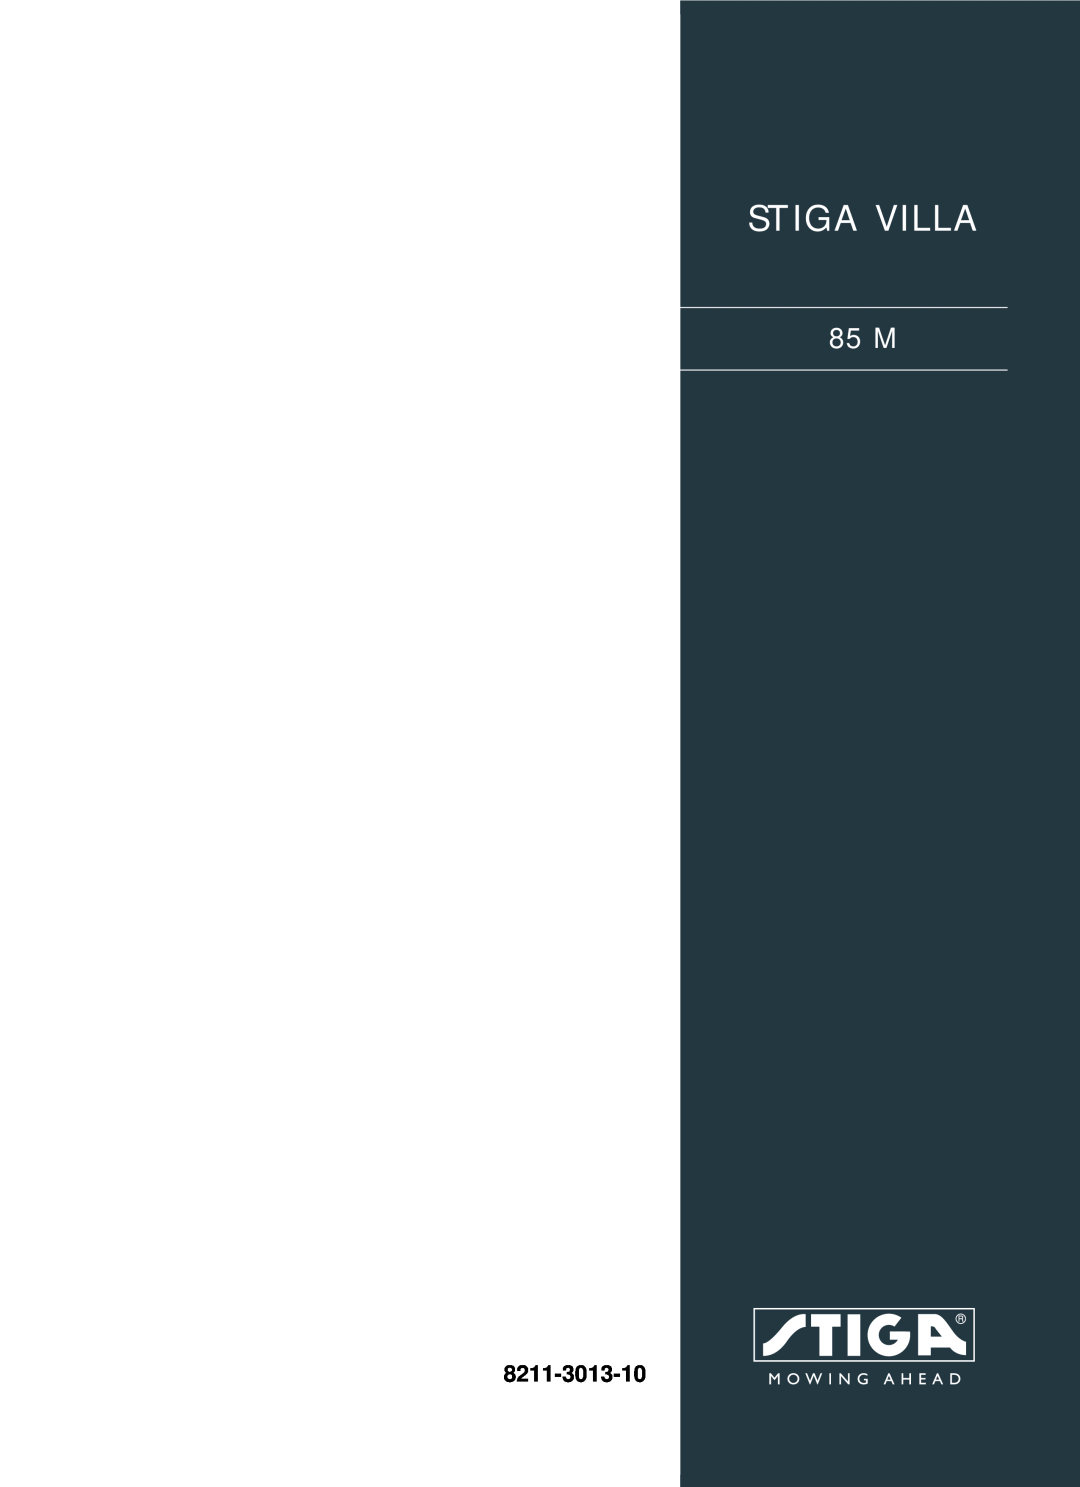 Stiga 8211-3013-10 manual Stiga Villa, 85 M 